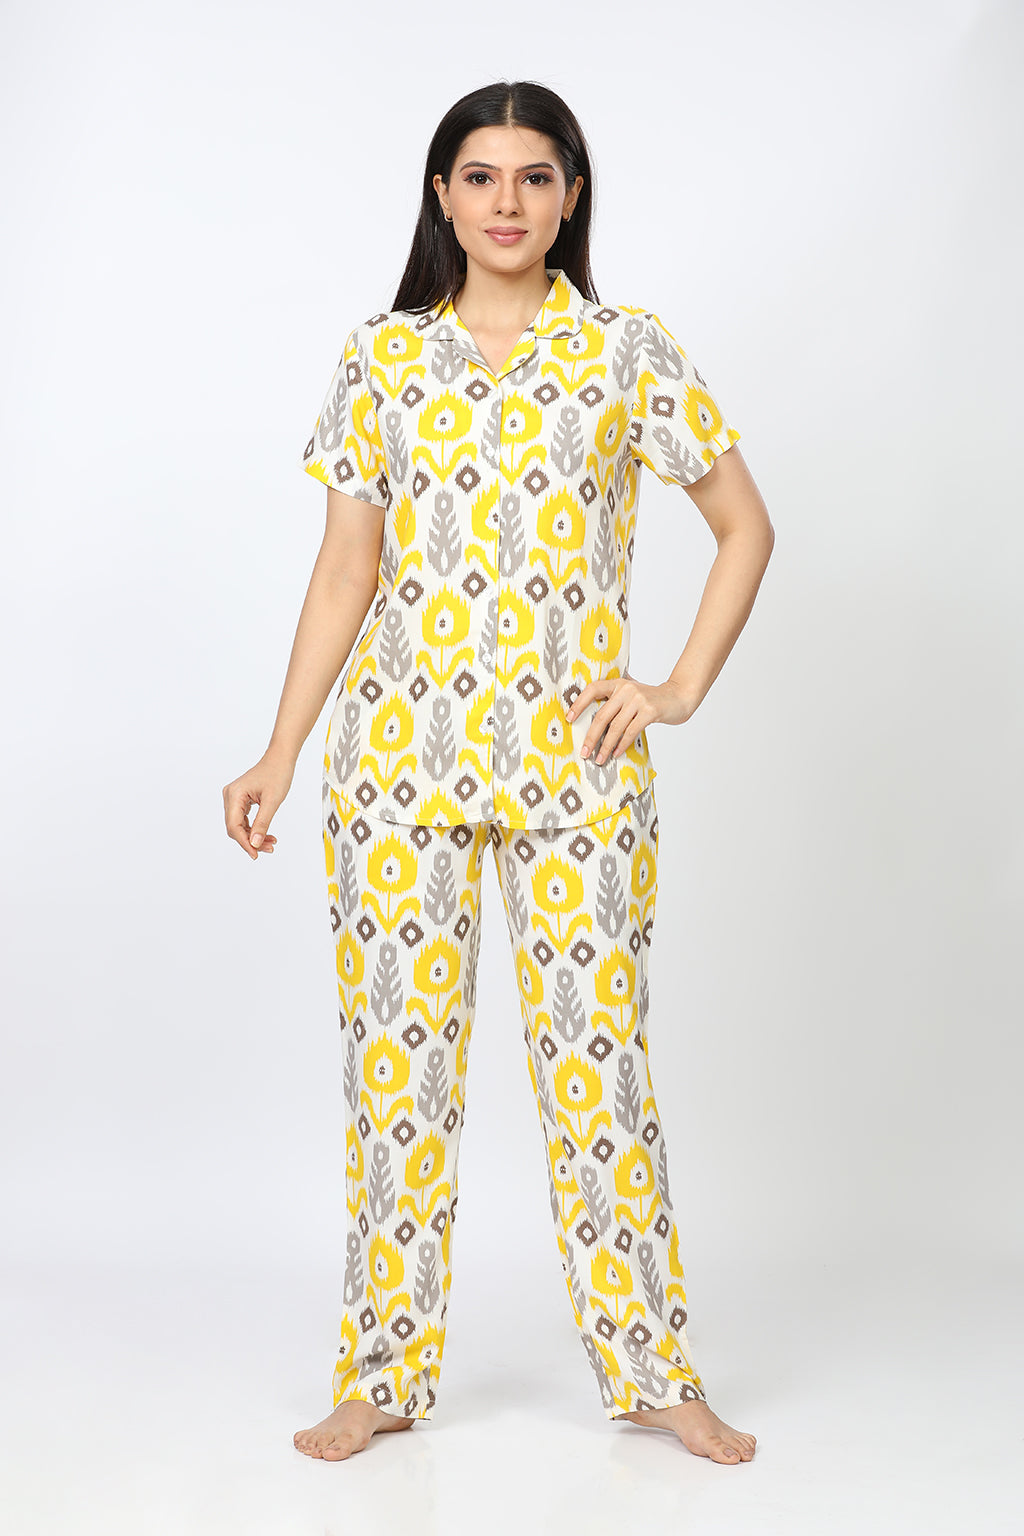 Maize Rayon Yellow Shirt - Pyjama Set